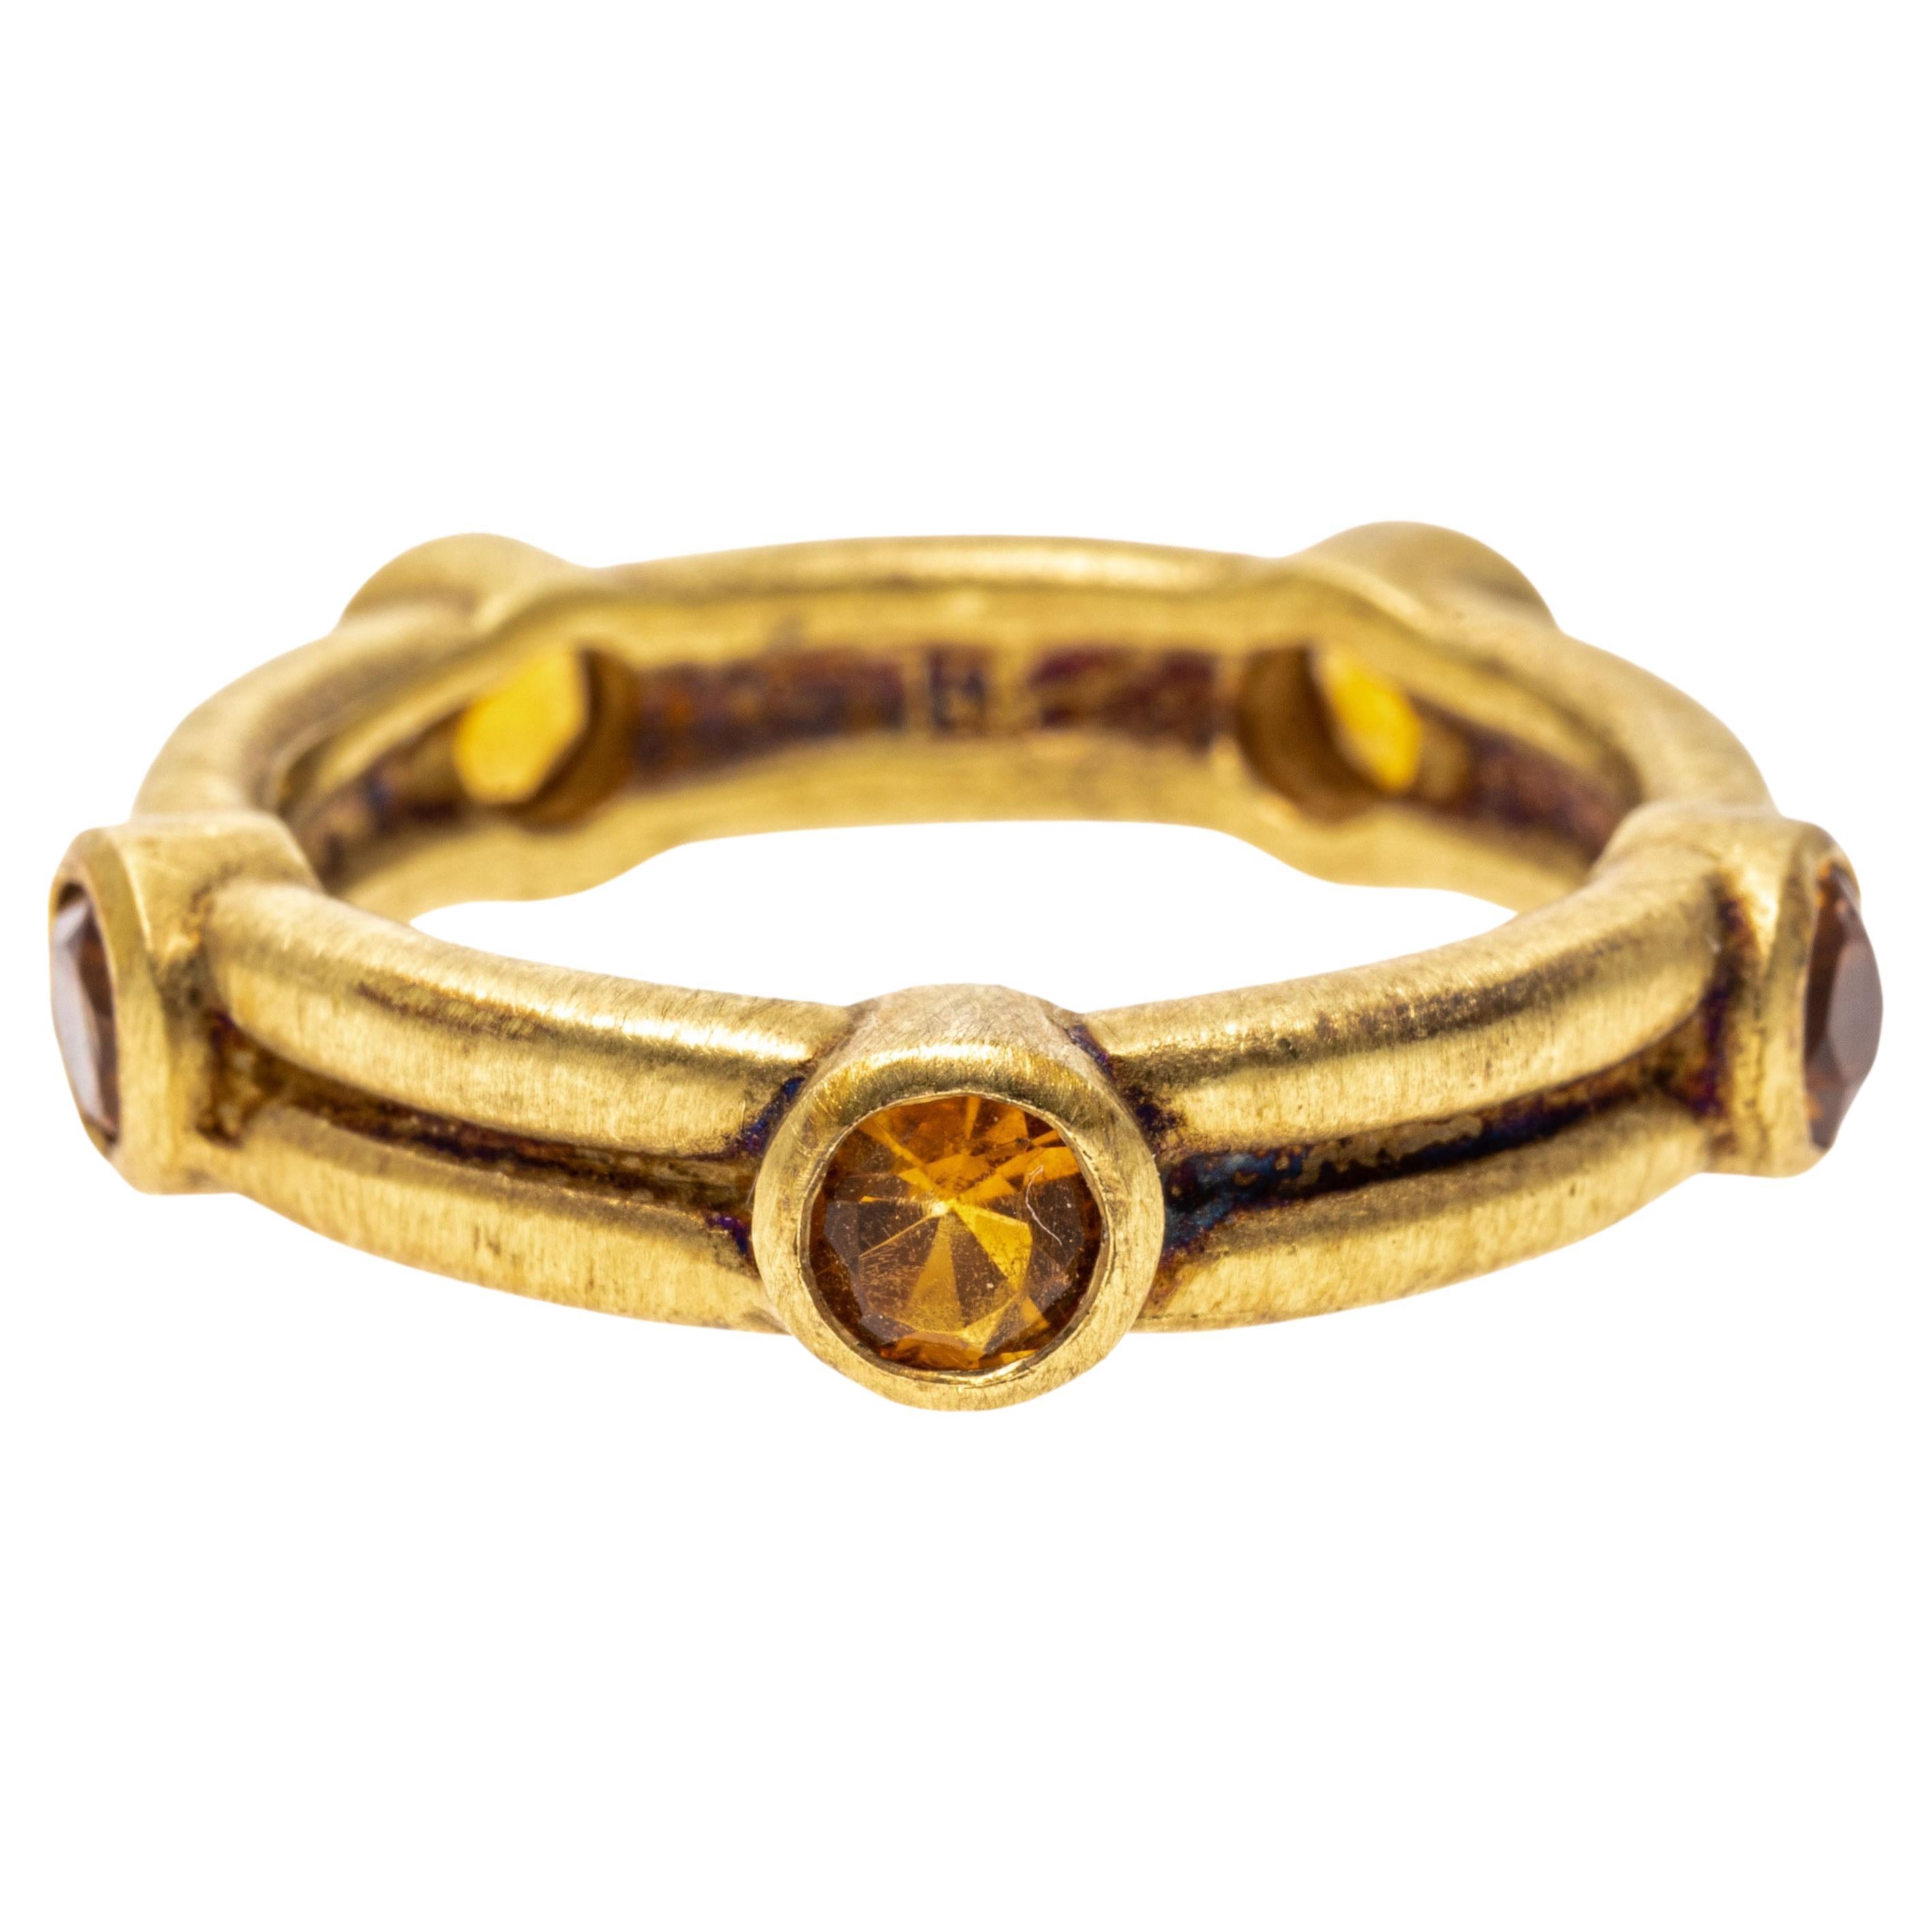 14 Karat Gelbgold Eternity-Ring mit Citrin in Lünette, Größe 6,75